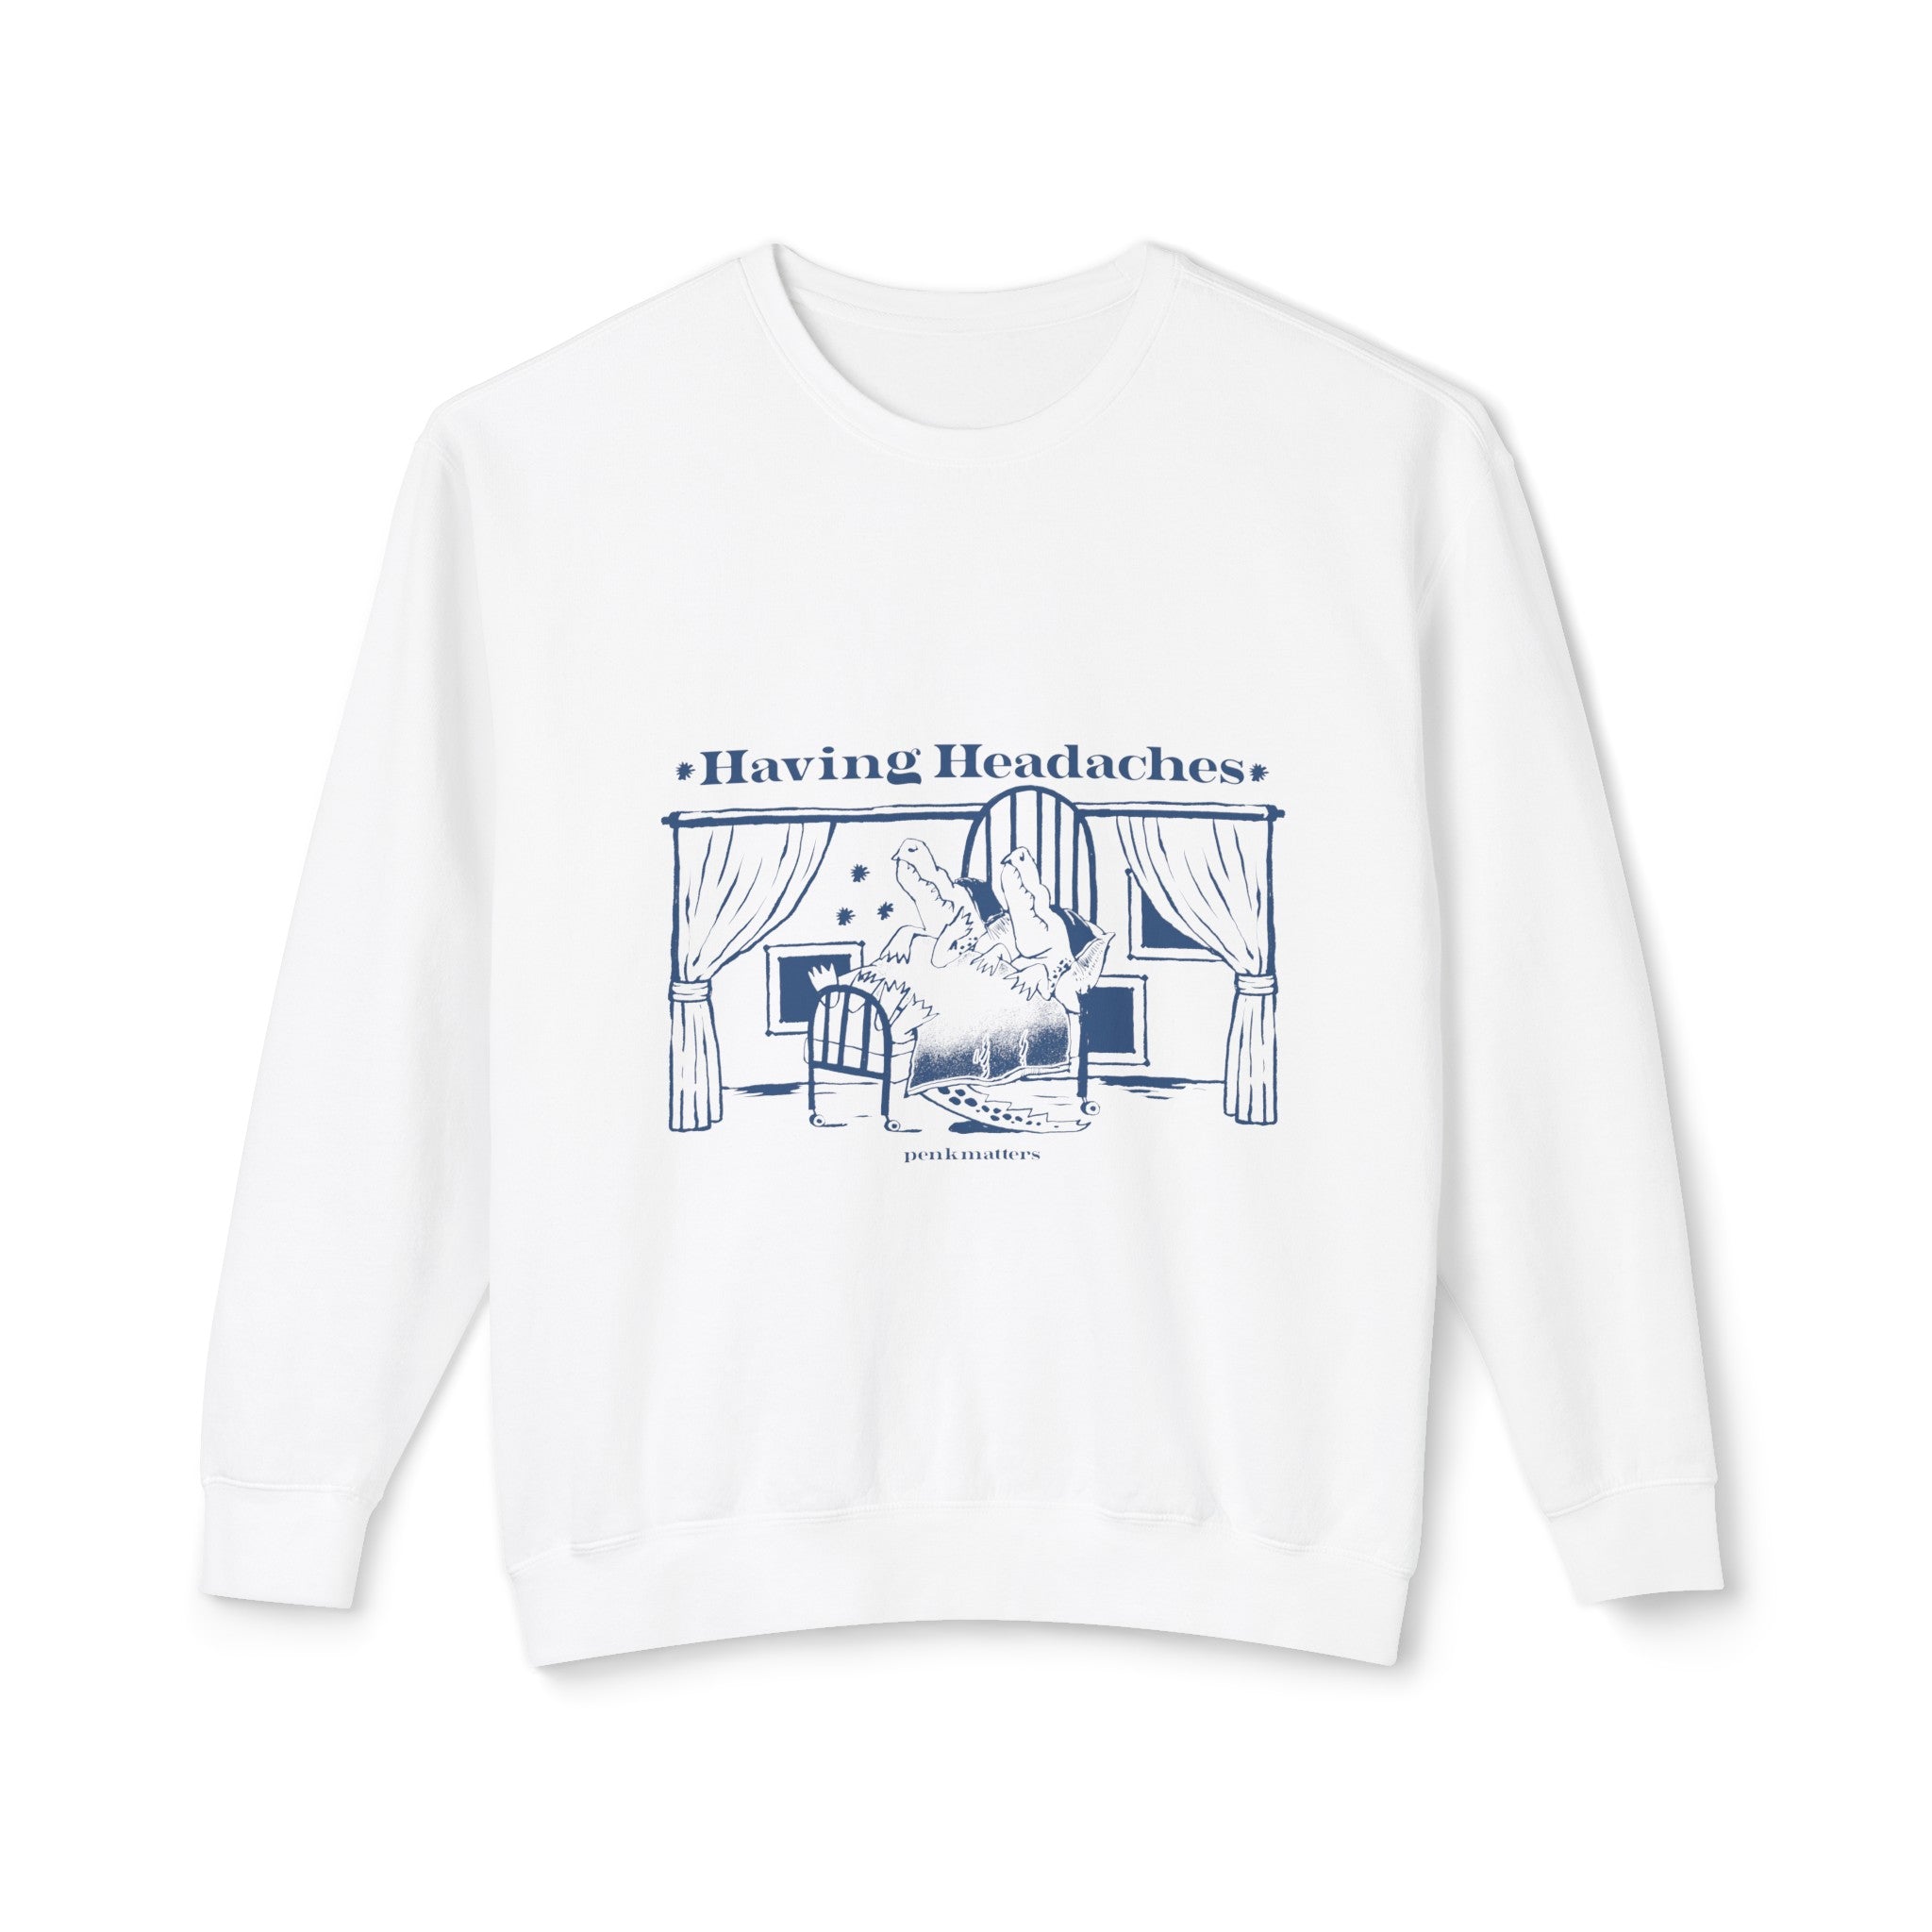 "Having Headaches" Sweatshirt